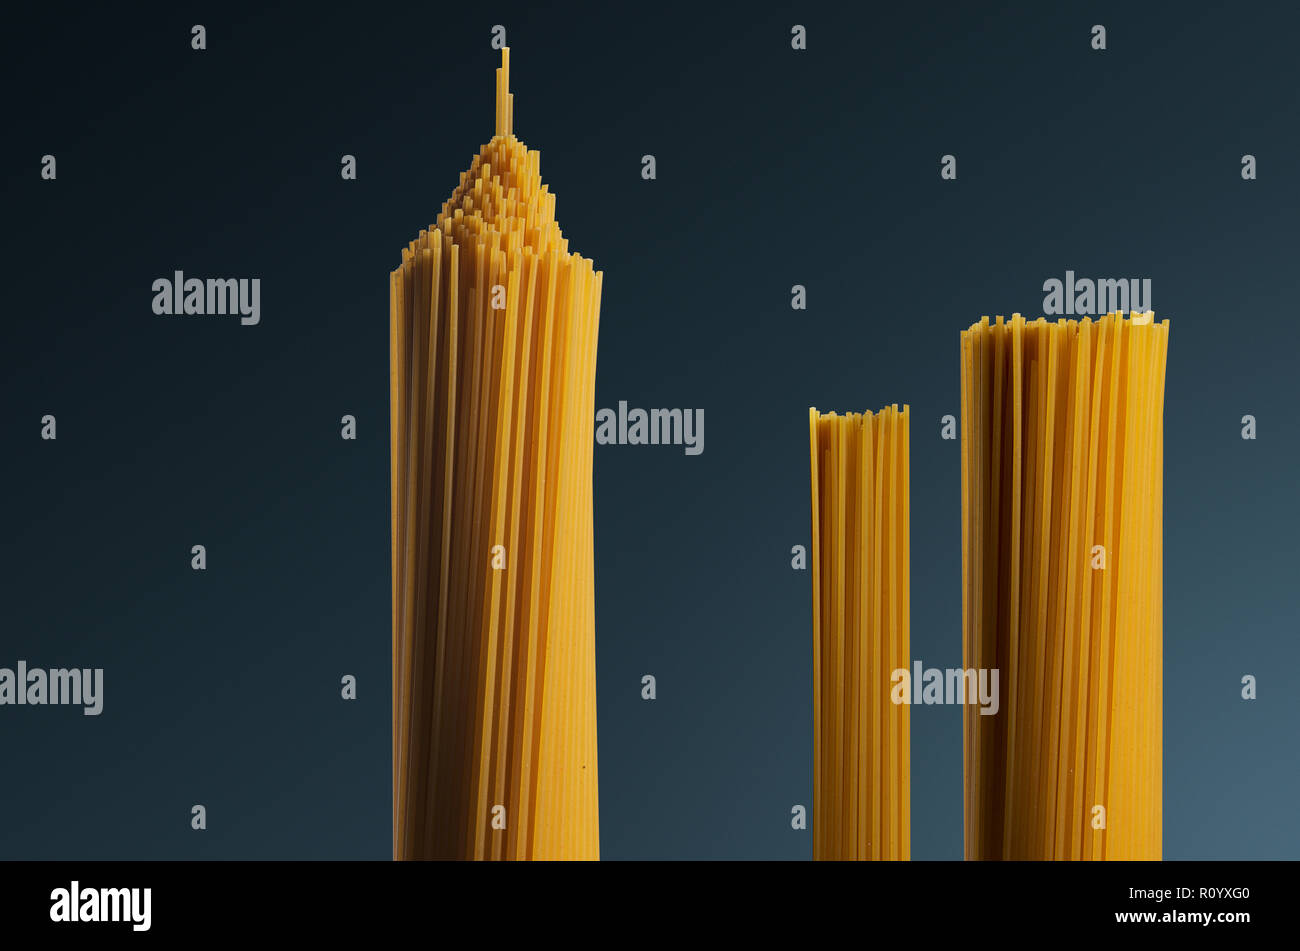 Trois grappes de matières en forme de spaghetti crus comme tower structures contre fond gris Banque D'Images